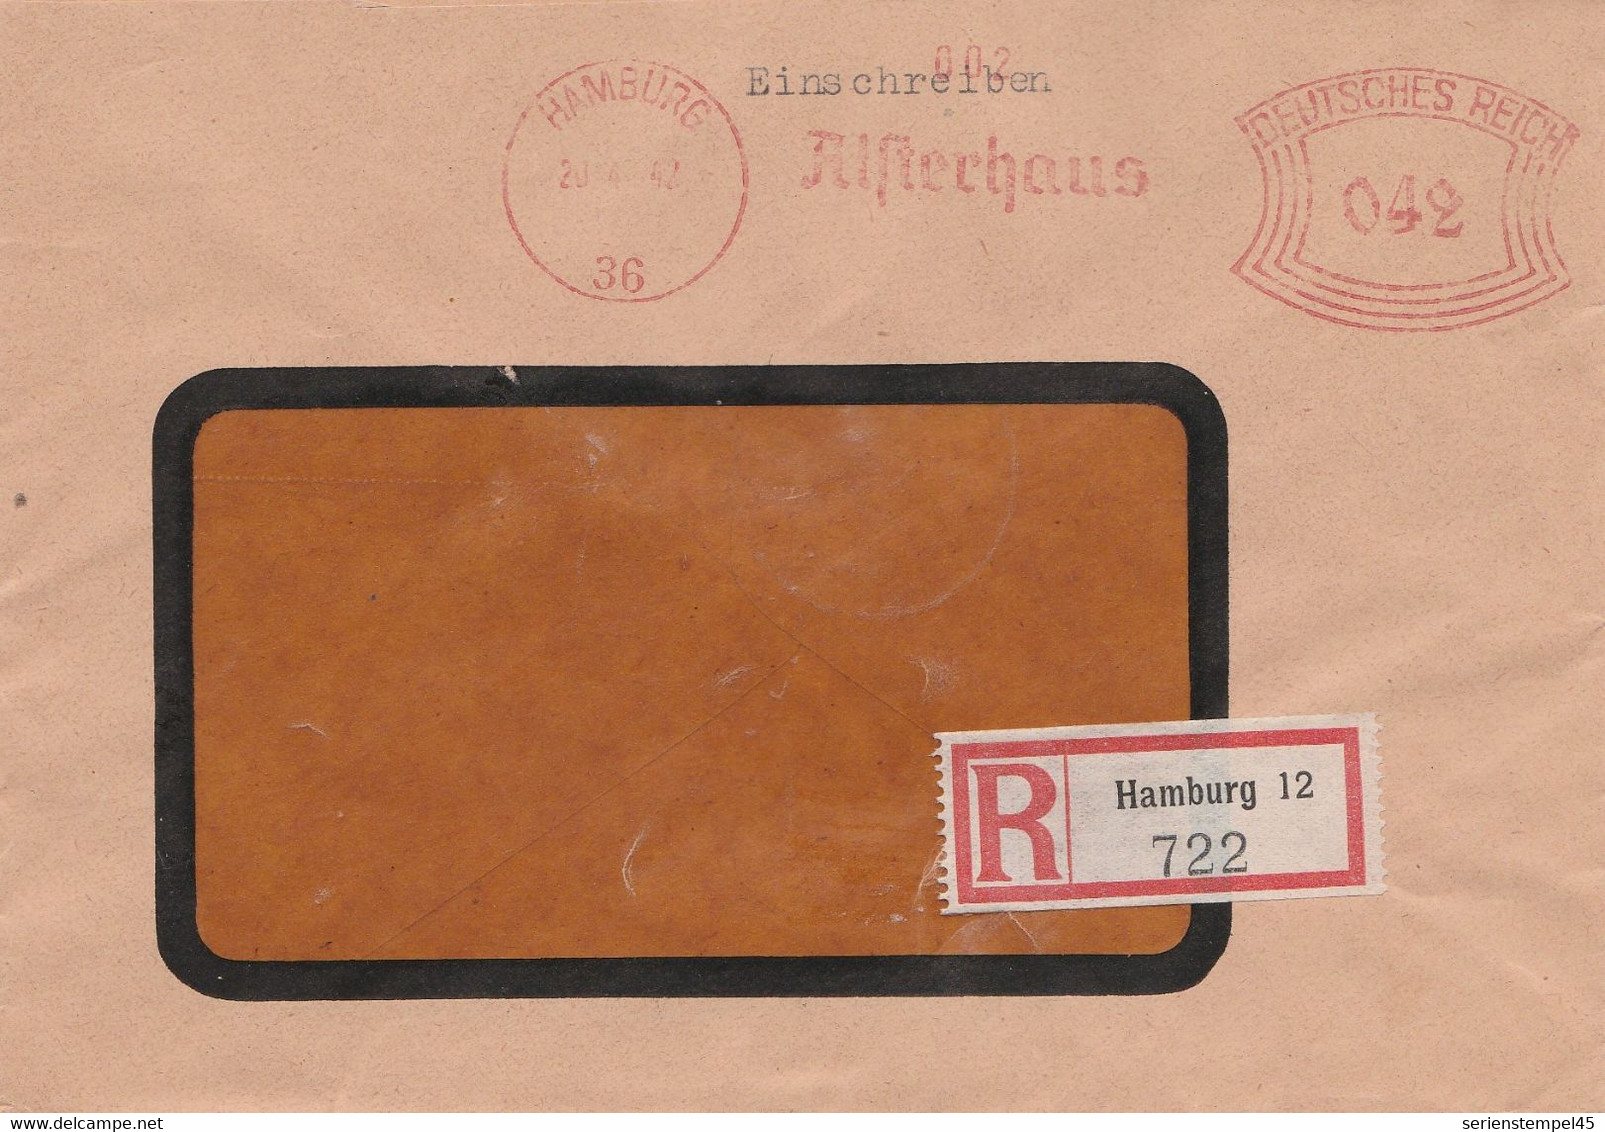 Deutsches Reich Einschreibe Brief Mit Freistempel Hamburg 36 1942 Alsterhaus - Machine Stamps (ATM)